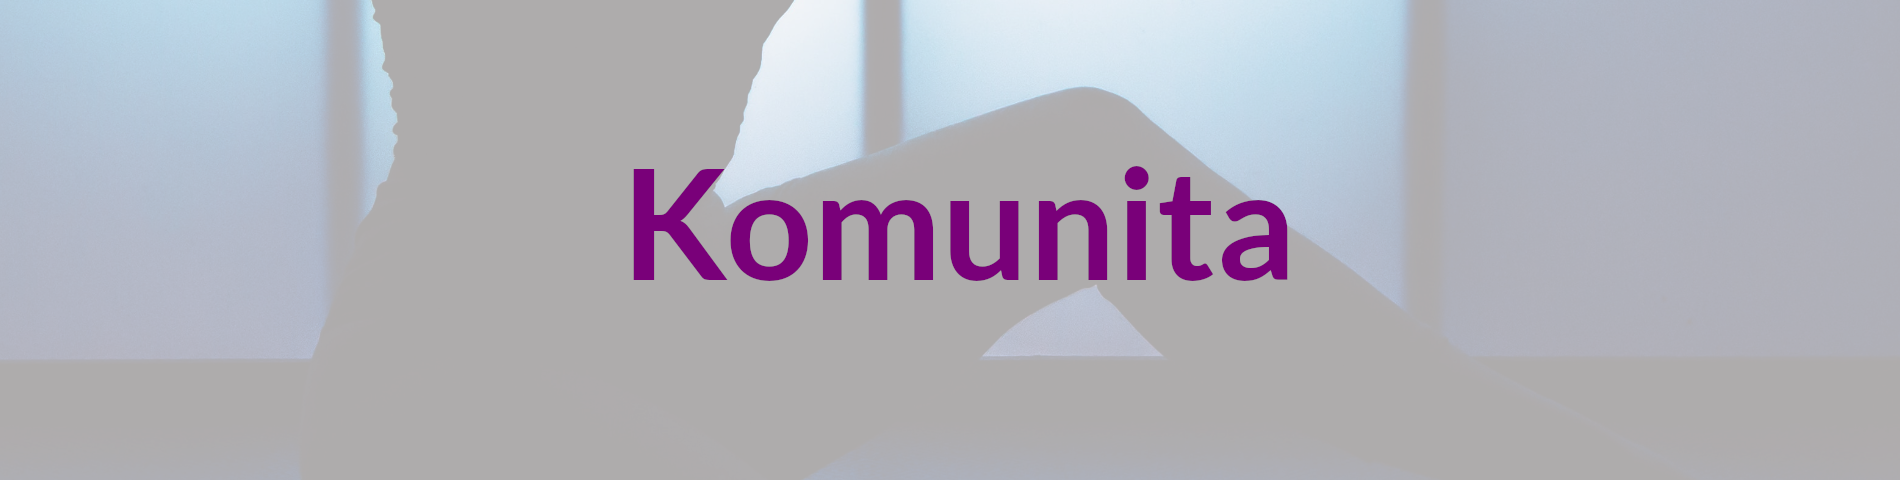 Header_Komunita